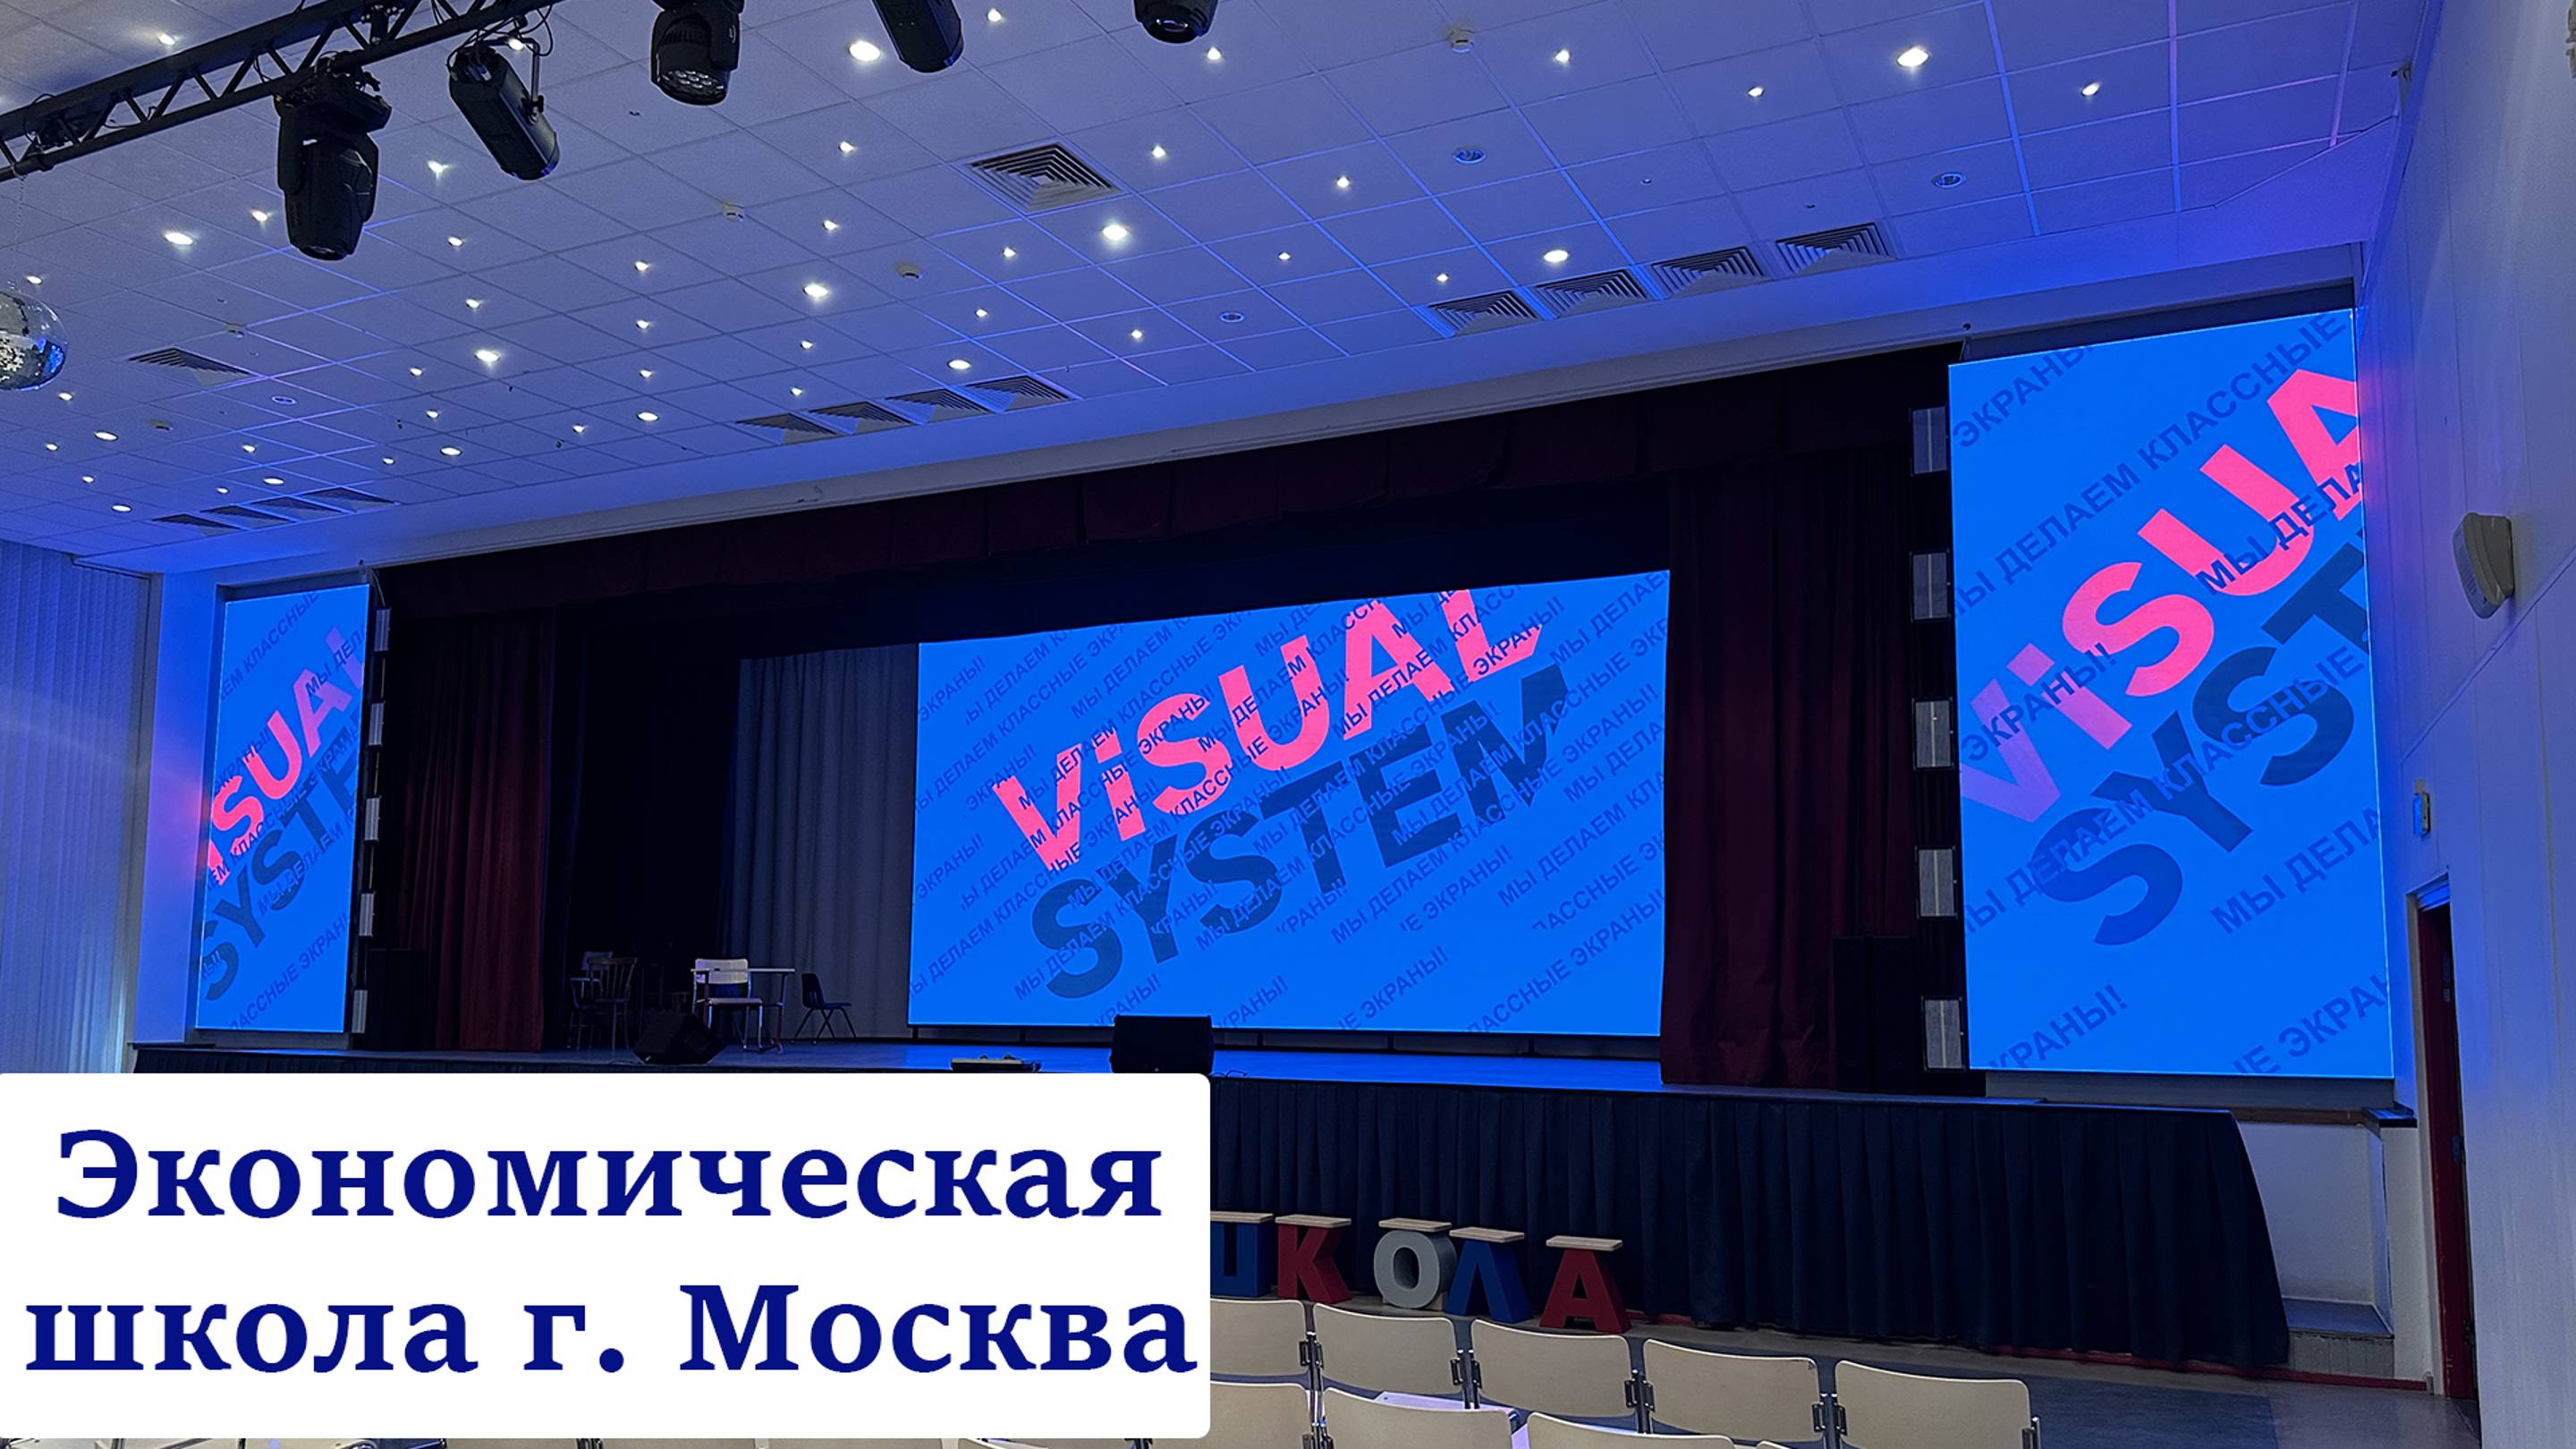 Экономическая школа г. Москва. Светодиодный Led Экран для сцены. Visual System (видеоэкран, лед,лэд)